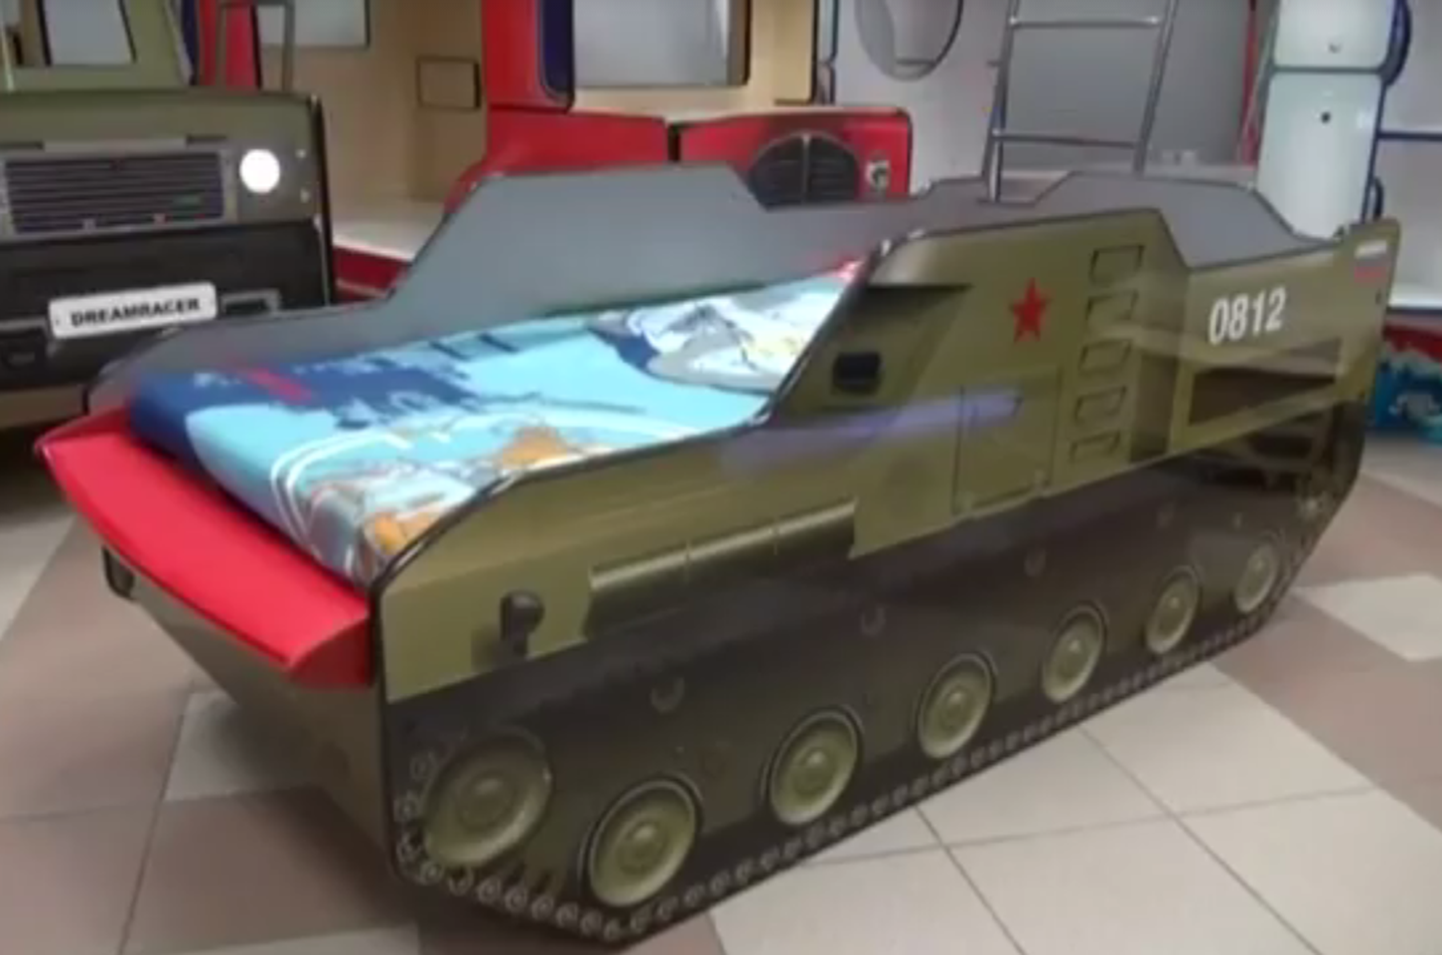 Tänu Peterburi mööblitootjale saavad väikesed venelased uinuda ka BUK-raketisüsteemi minimudelit meenutavas lastevoodis.